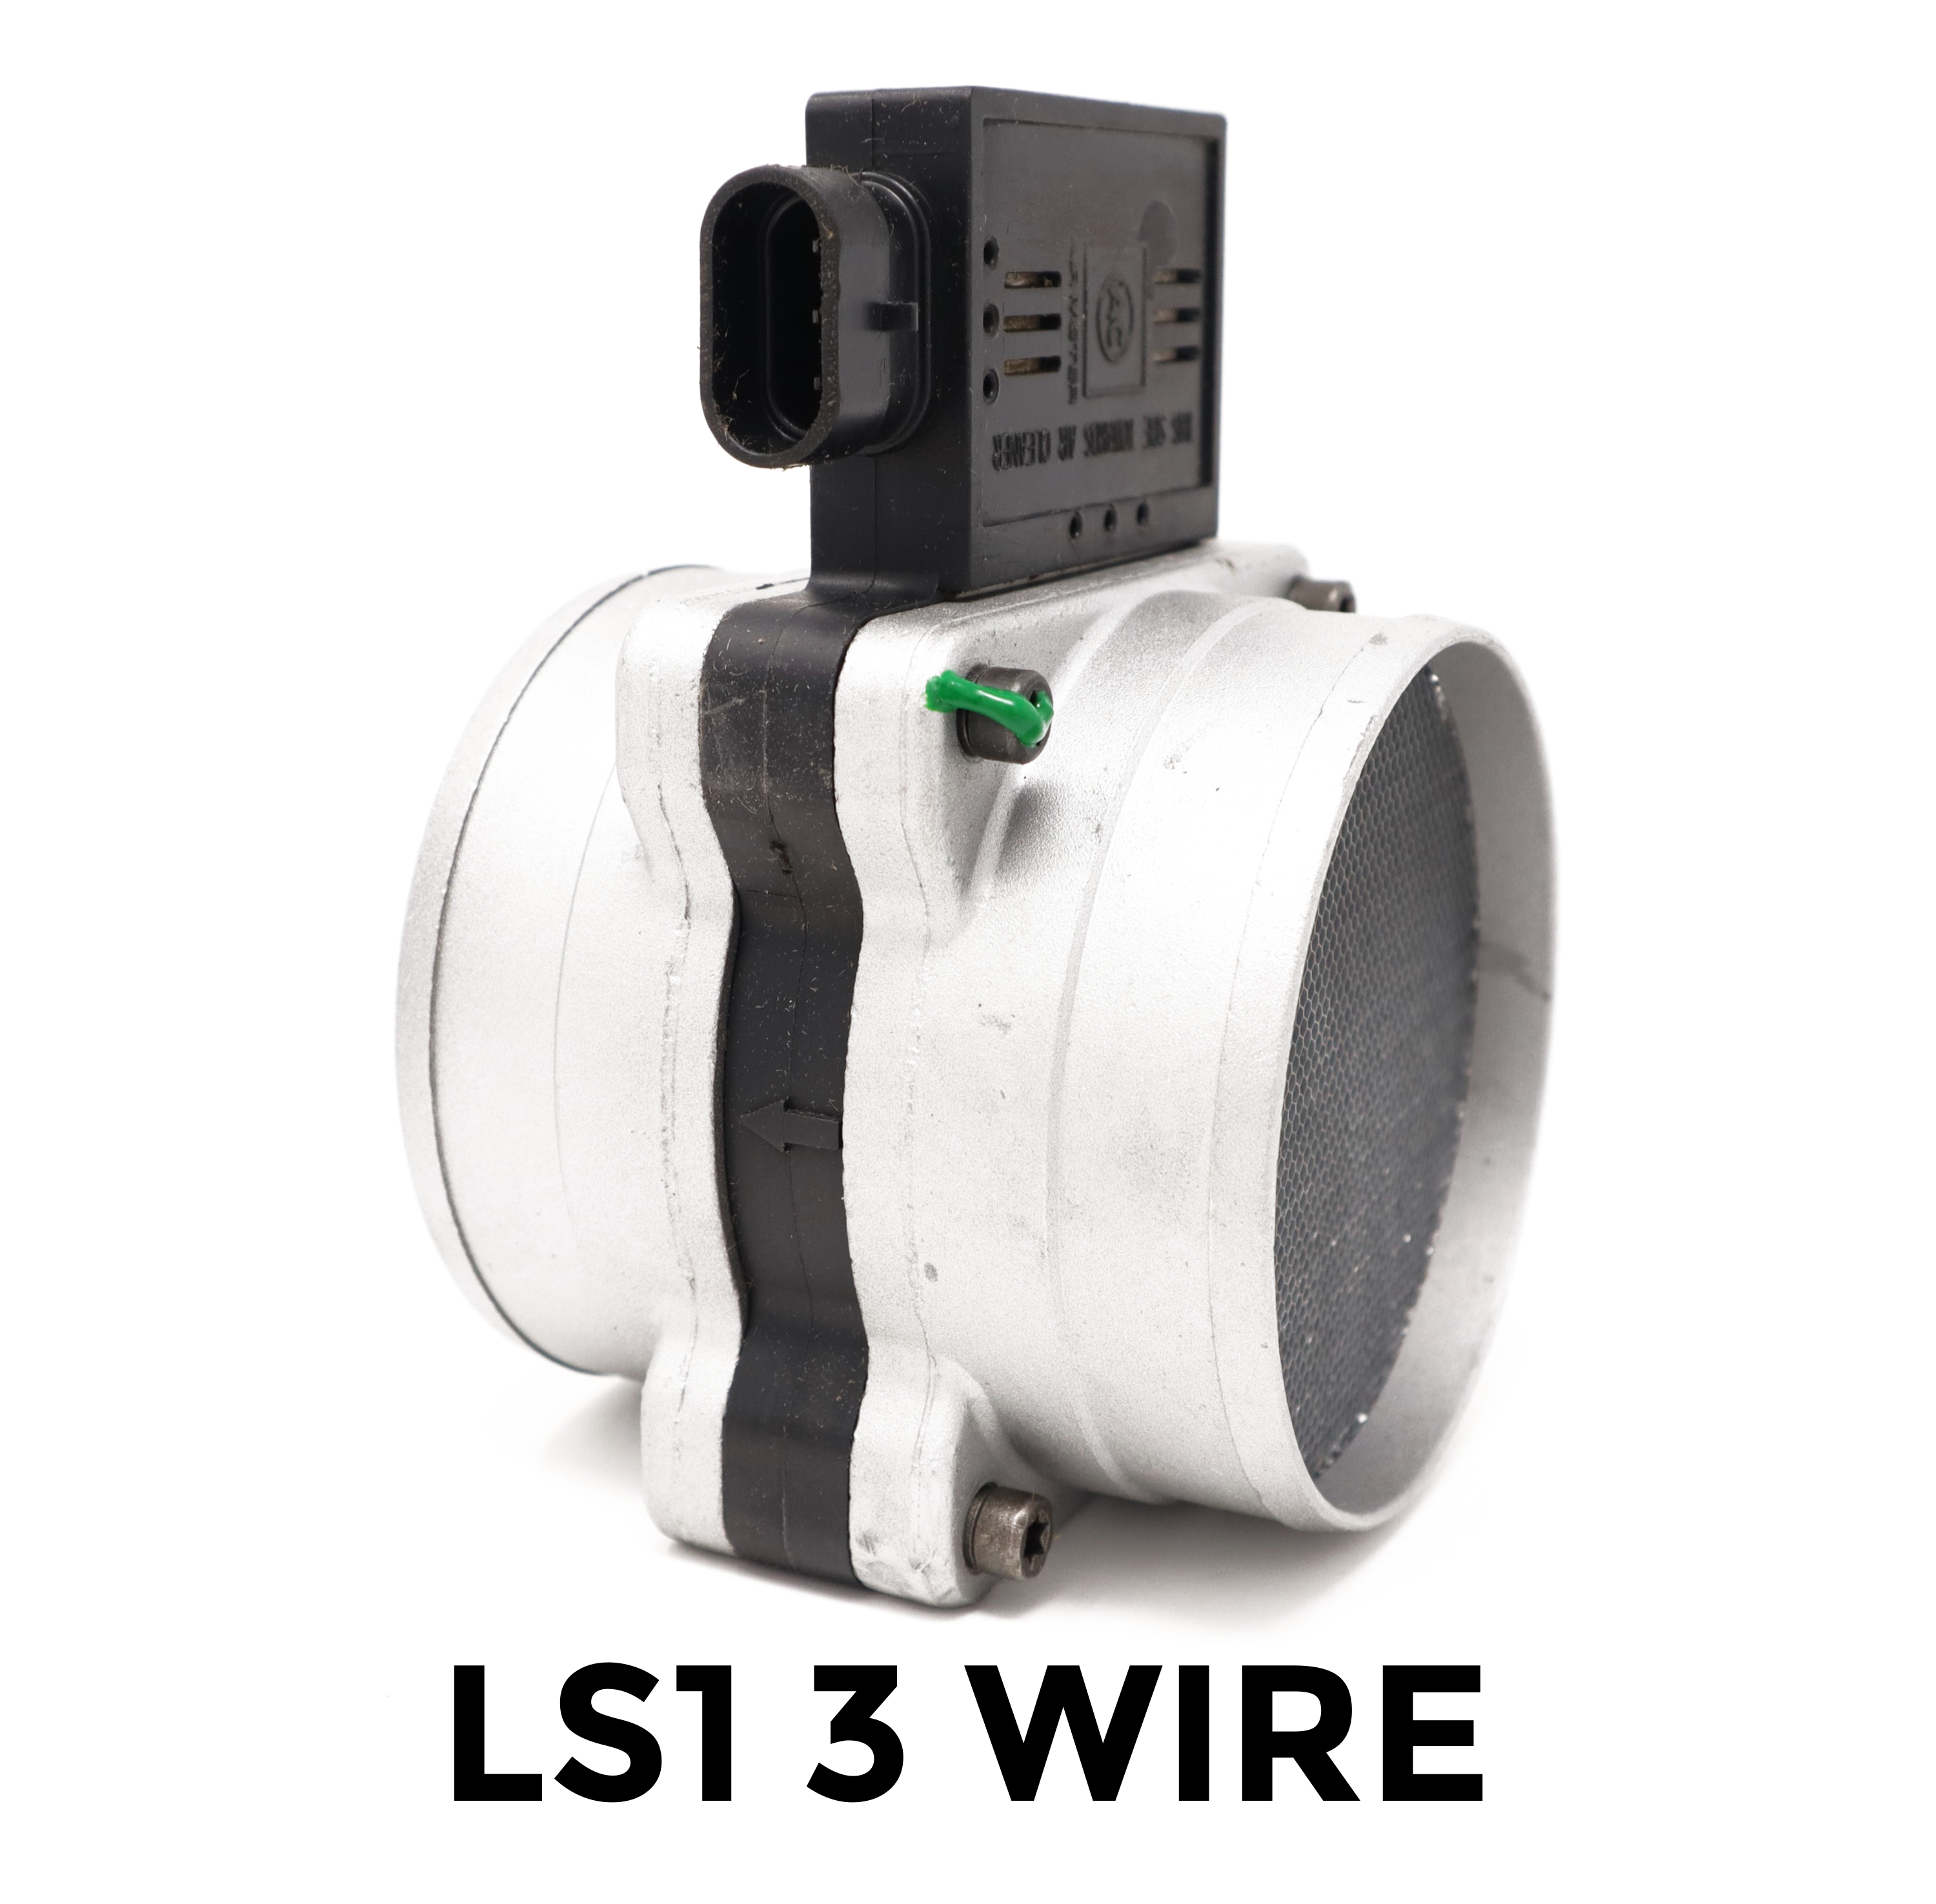 LS1 3 Wire $0.00